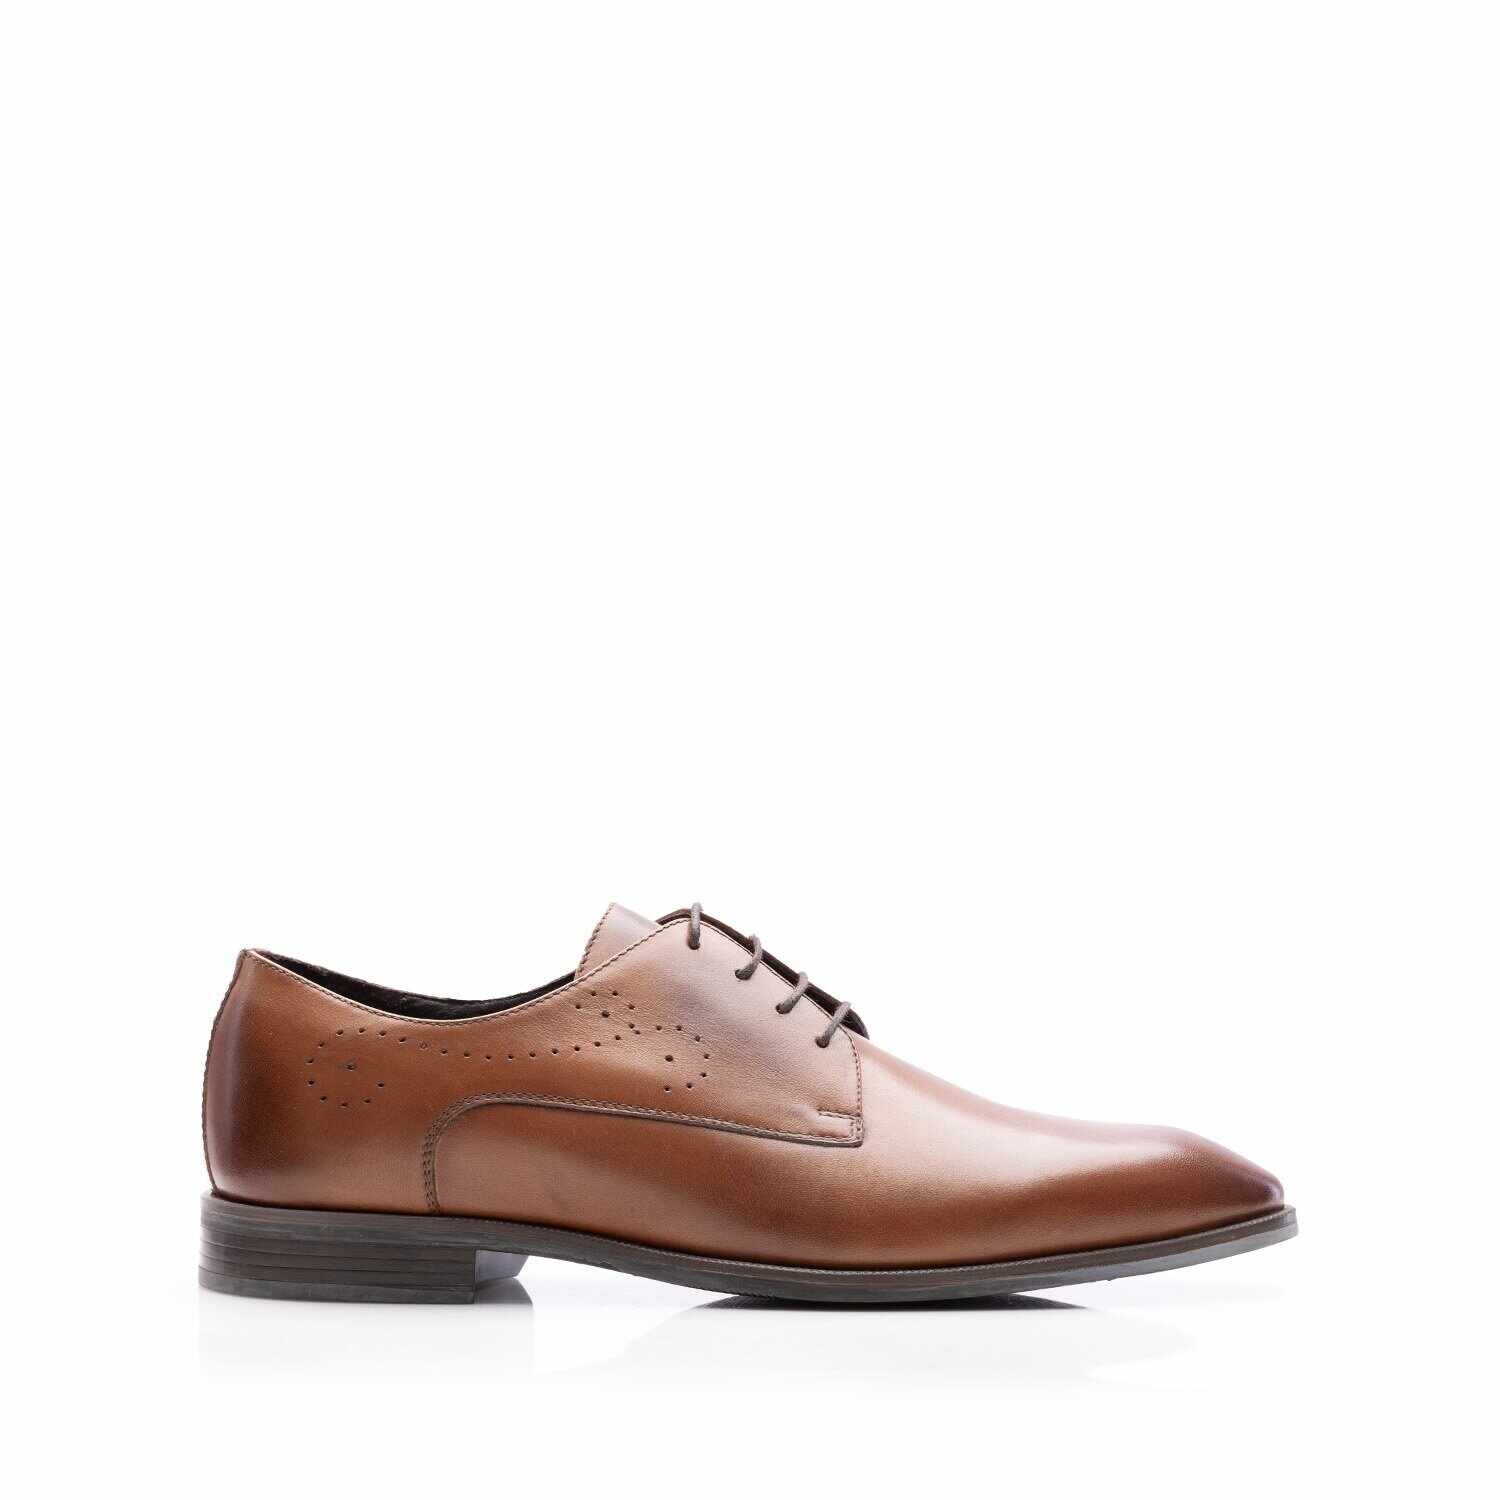 Pantofi eleganţi bărbaţi din piele naturală, Leofex - 663 Cognac Box